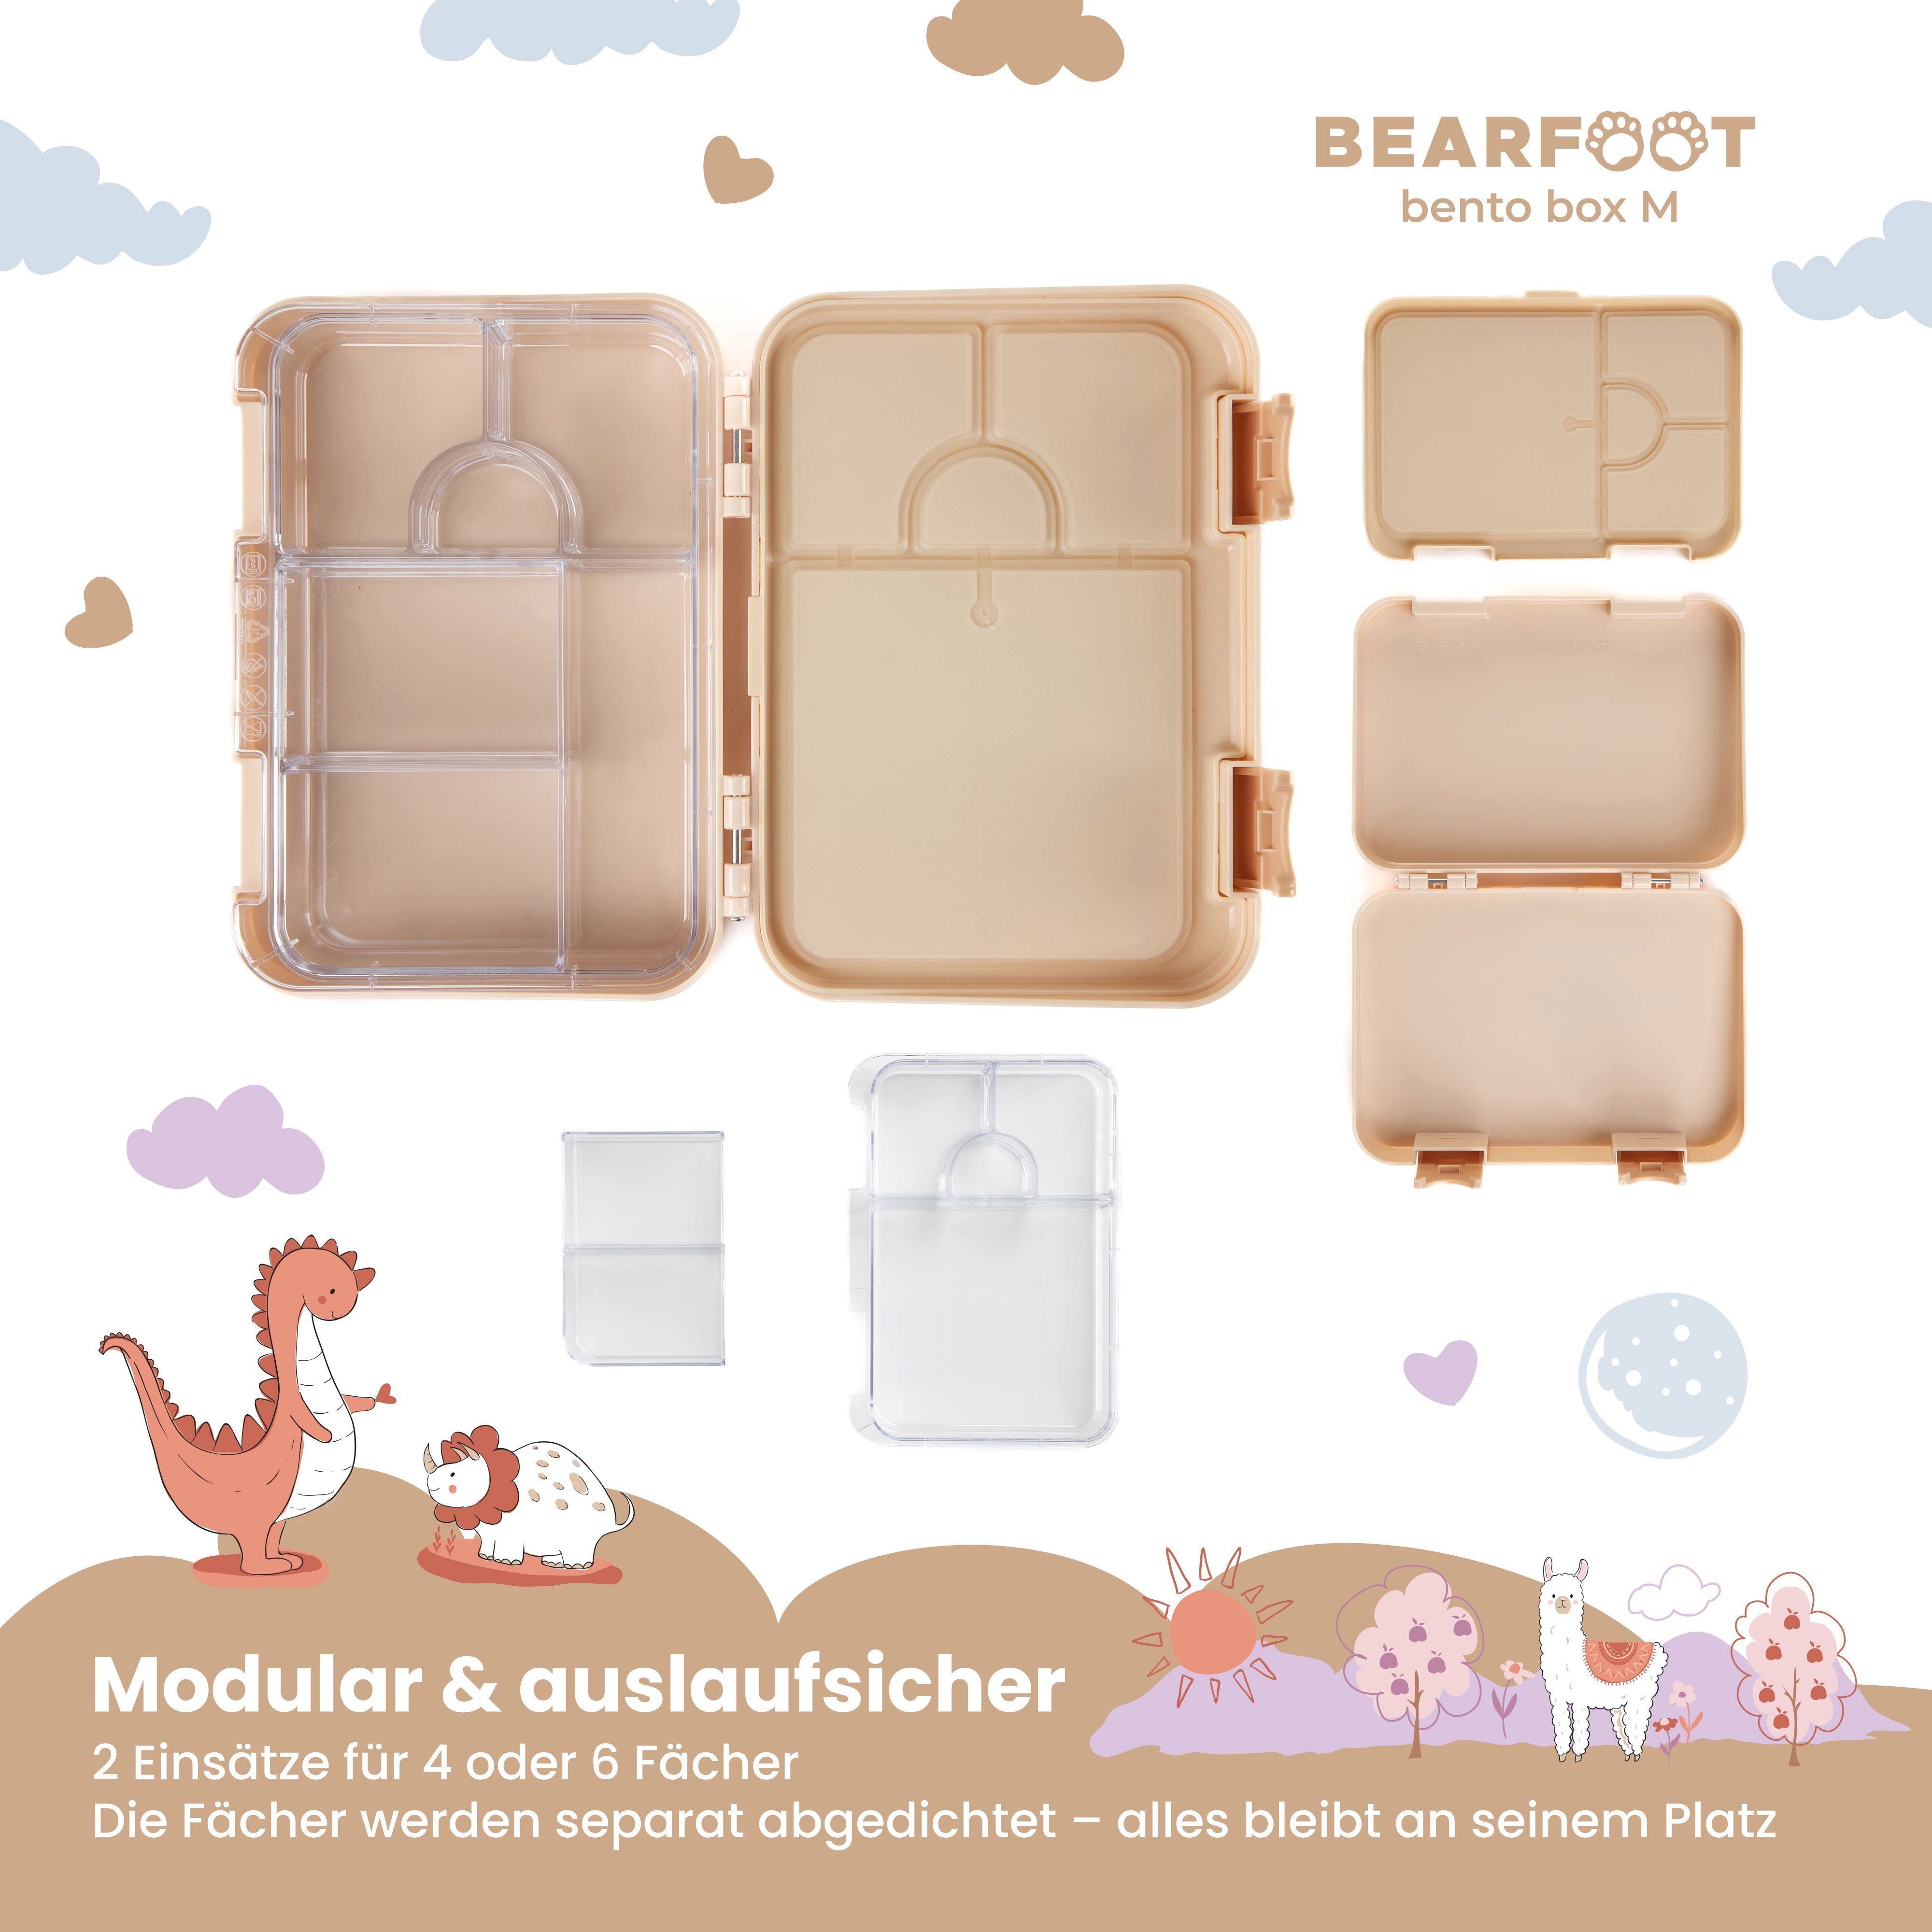 BEARFOOT Lunchbox Fächern, mit Kinder Dinos, box handgezeichnete Brotdose Bento modular Designs, - Dinos-braun Lunchbox